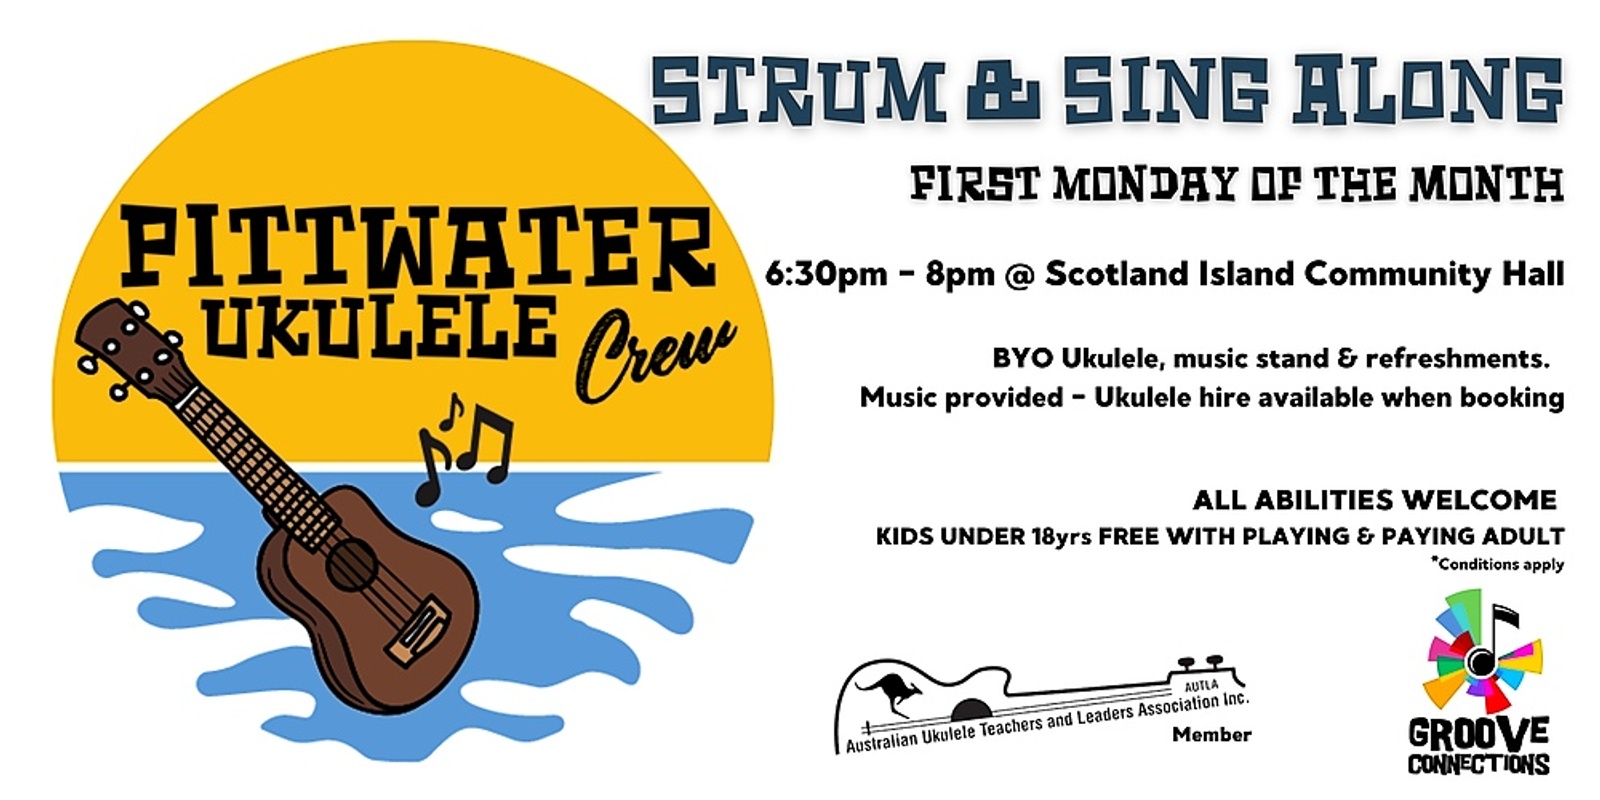 Banner image for Ukulele Strum & Sing Along - Scotland Island